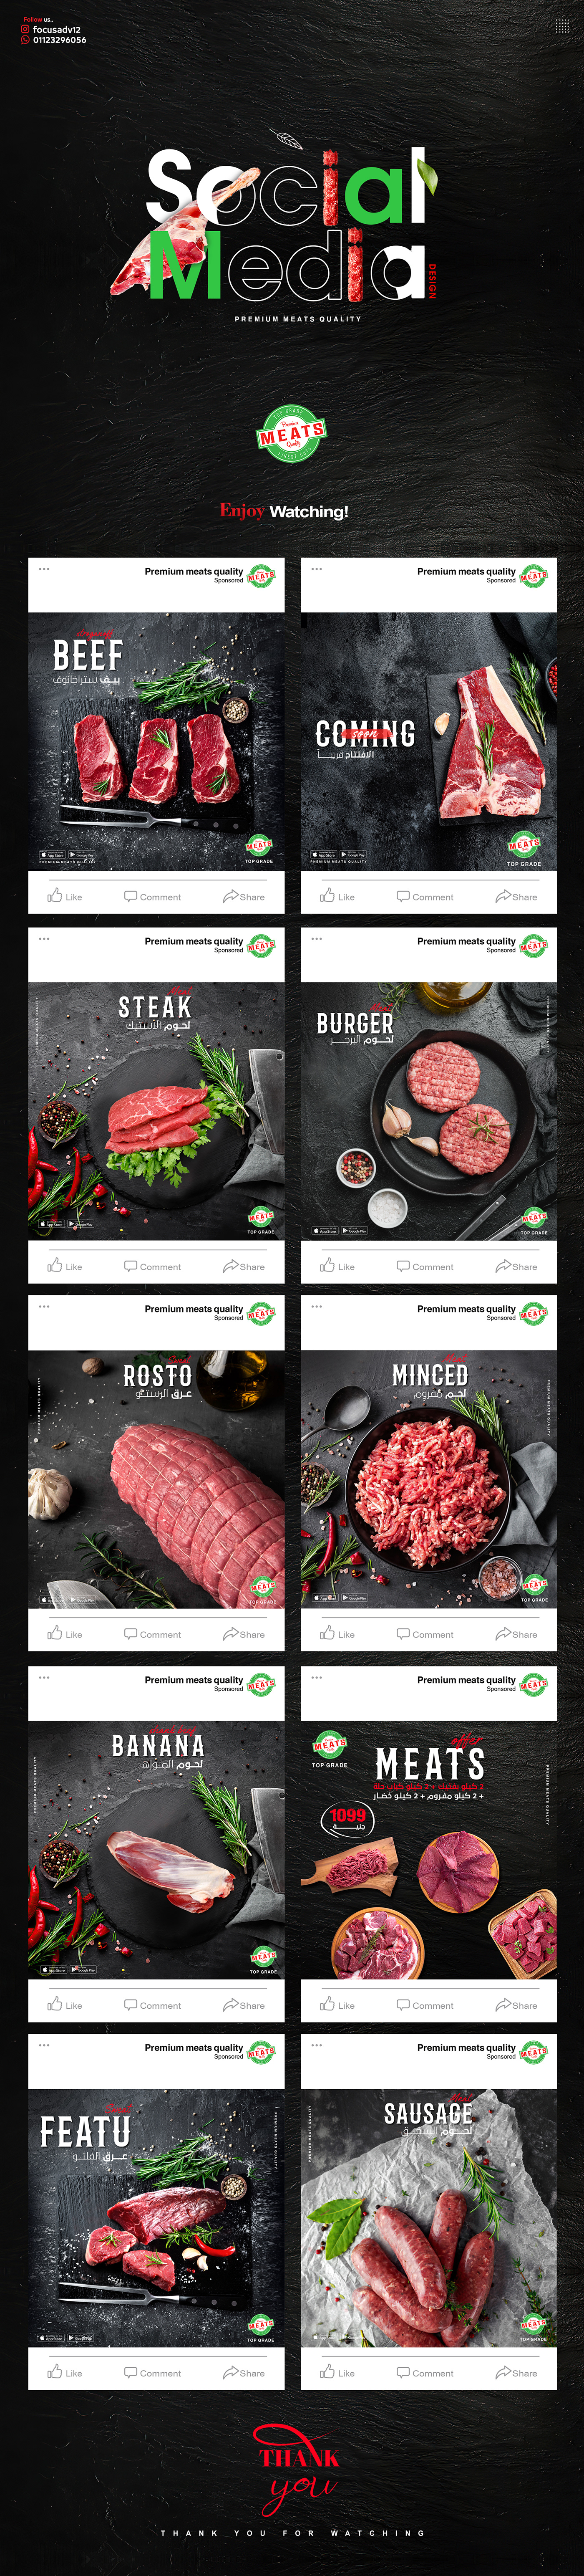 ads Advertising  Food  marketing   meat post restaurant social media